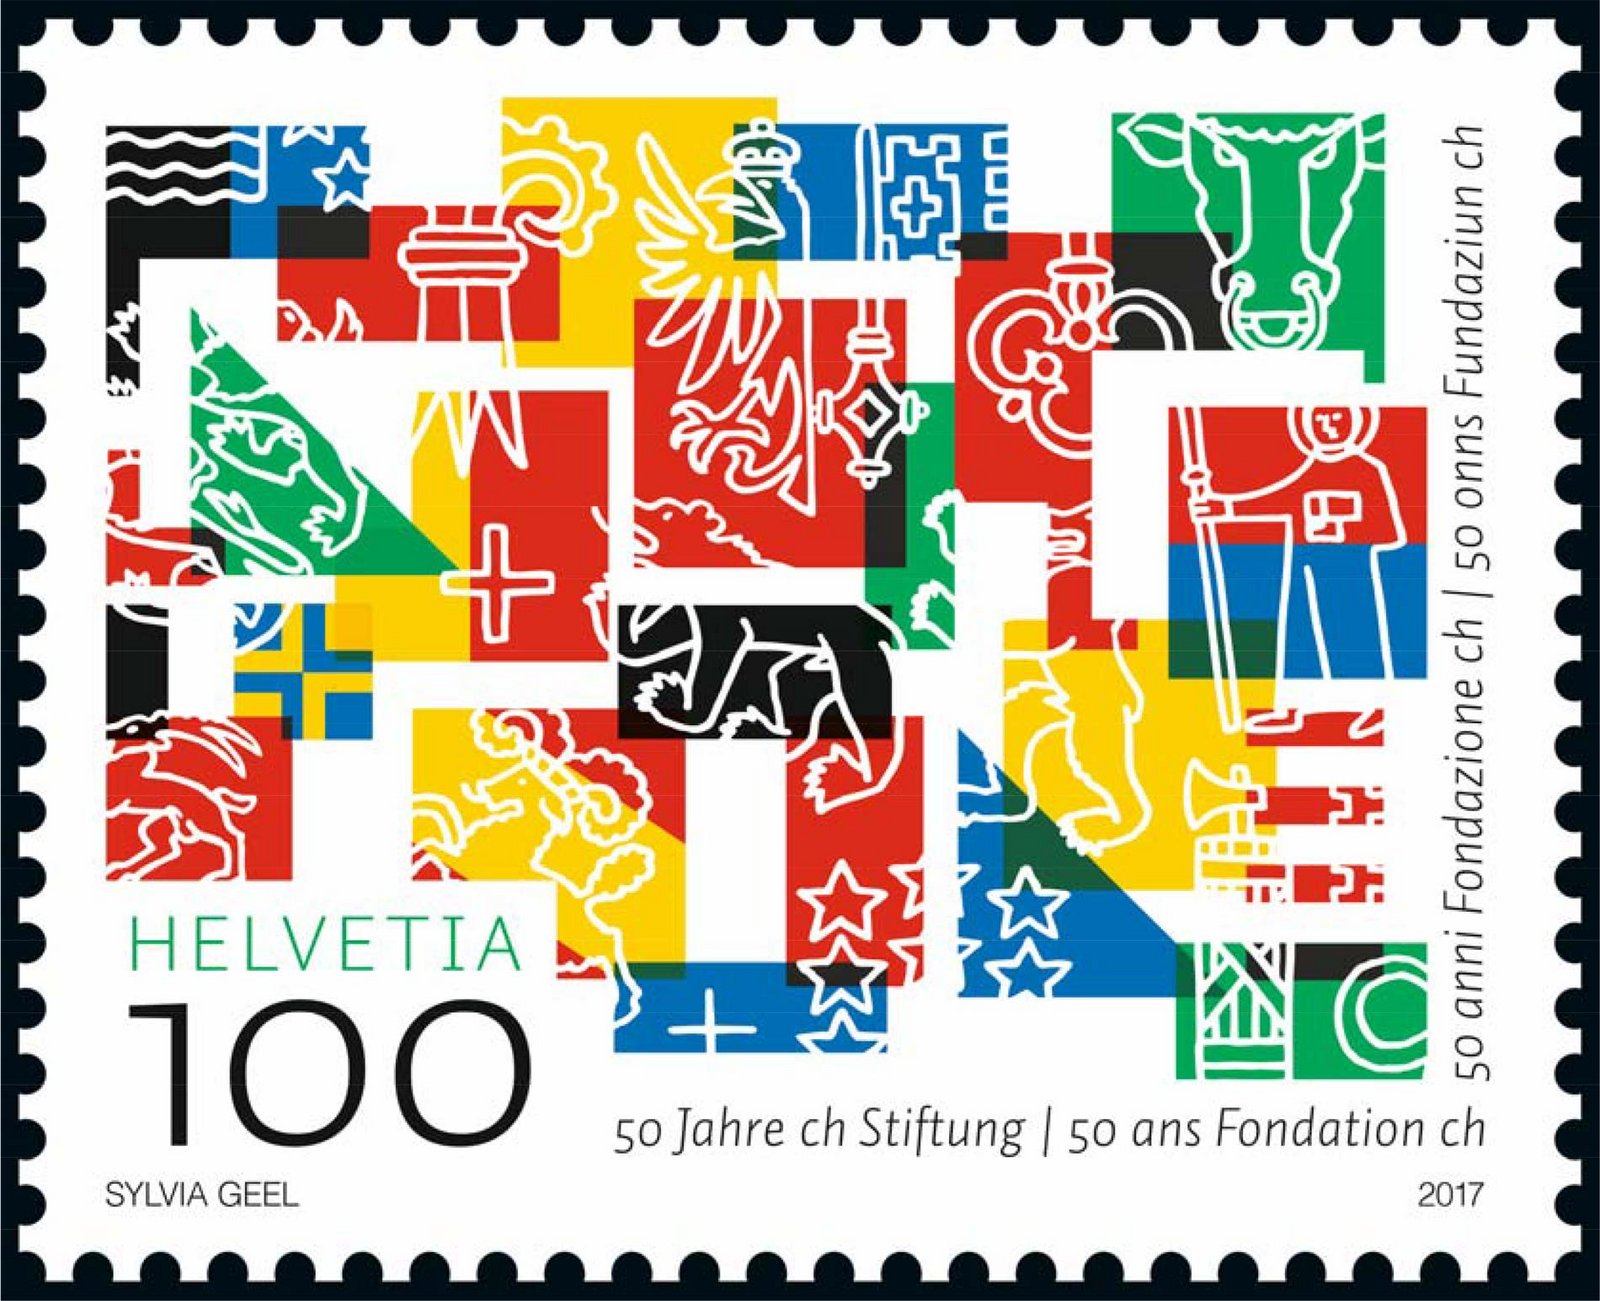 Questo francobollo multicolore raggruppa e mescola i colori e i simboli delle bandiere dei 26 Cantoni svizzeri.